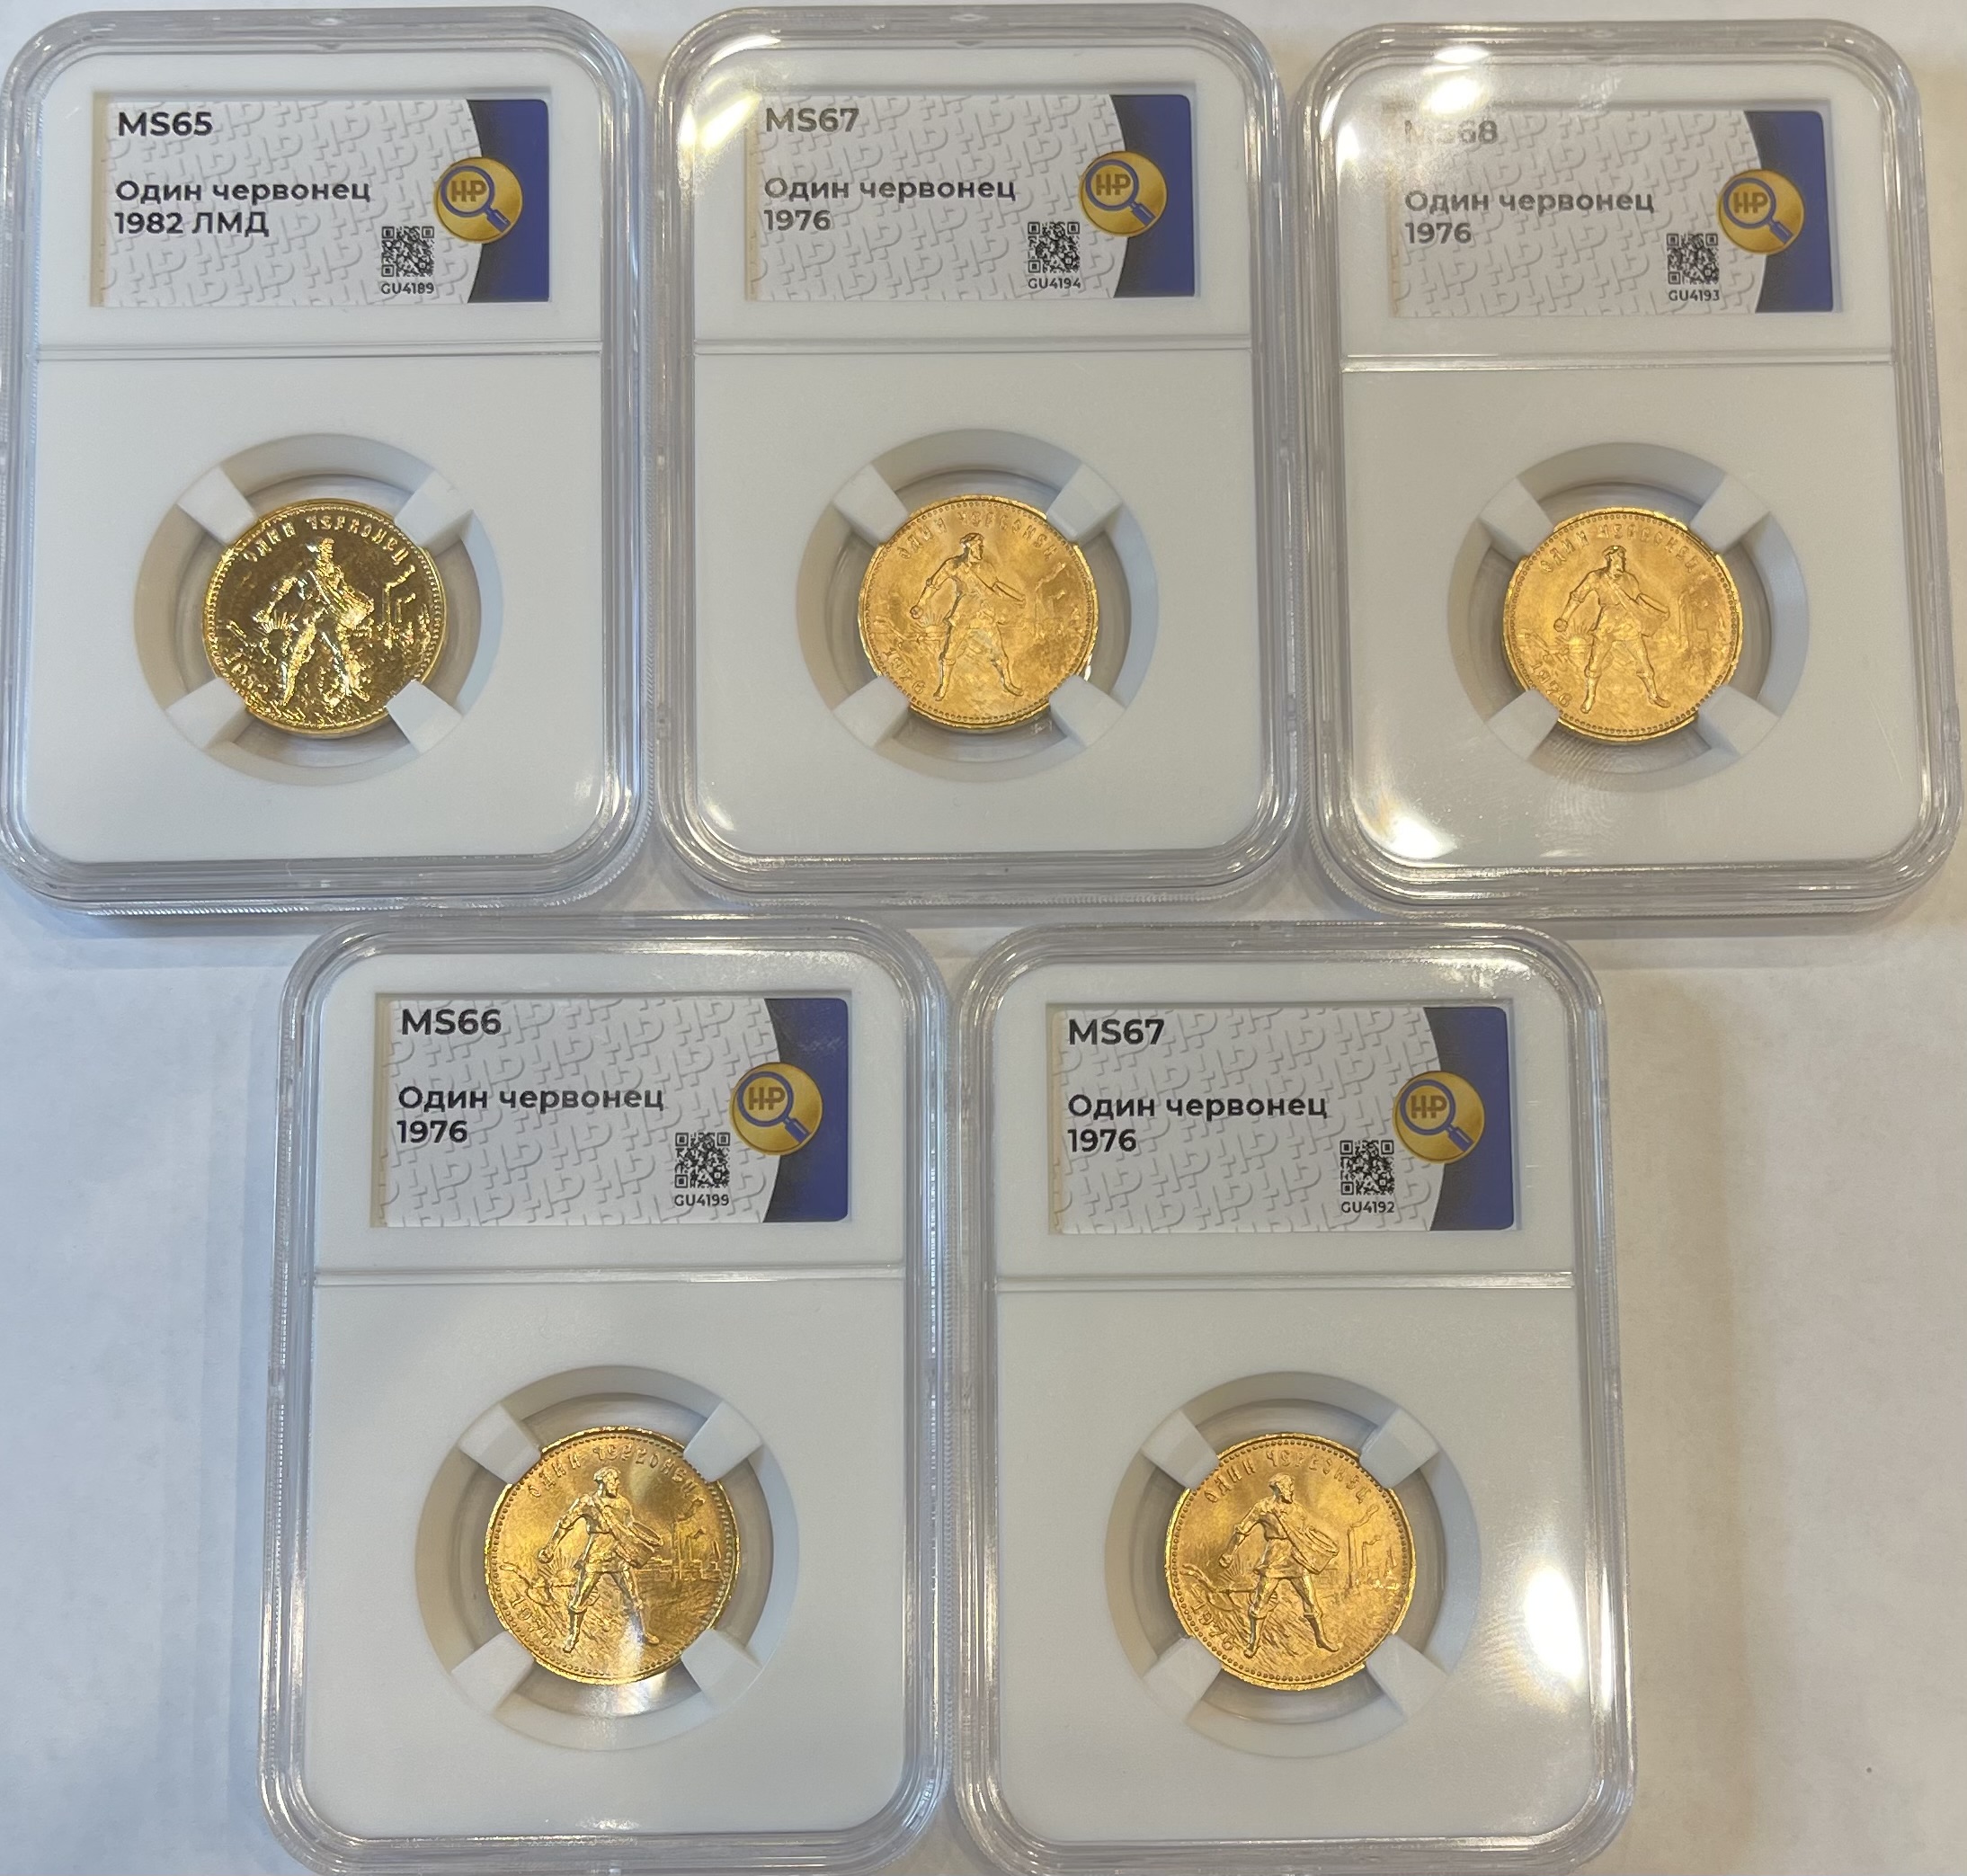 Золотые монеты Червонец Сеятель в слабах ННР с высокими грейдами, лучшее вложение денег в памятные монеты, мечта любого коллекционера и инвестора!!!